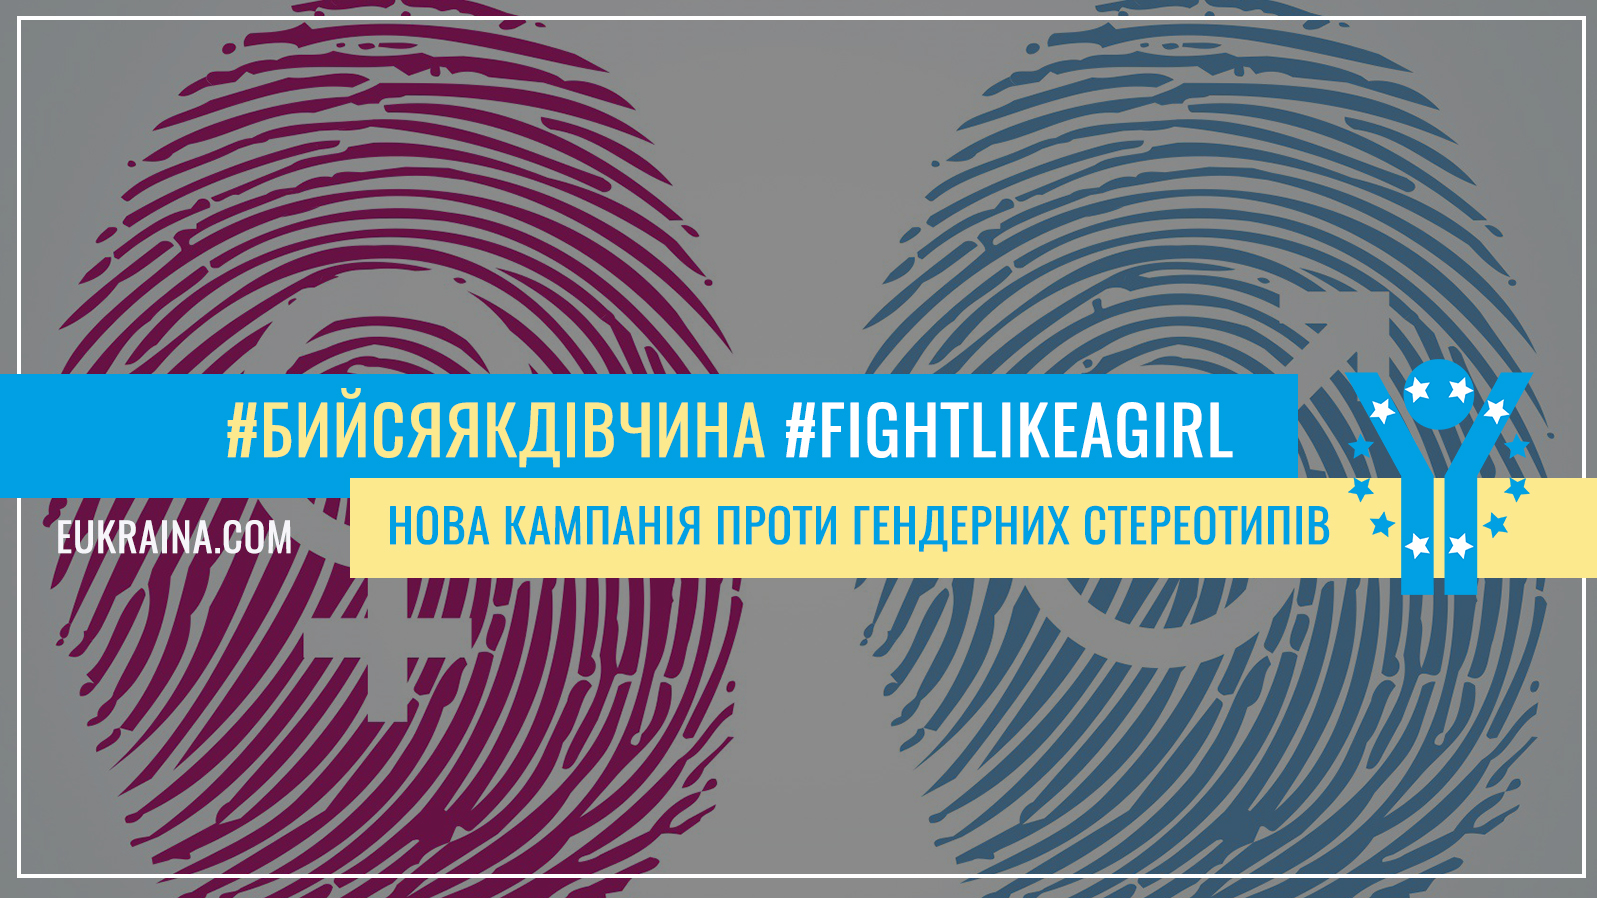 #fightlikeagirl ЄС кидає виклик гендерним стереотипам у новій інформаційній кампанії «Бийся як дівчина»